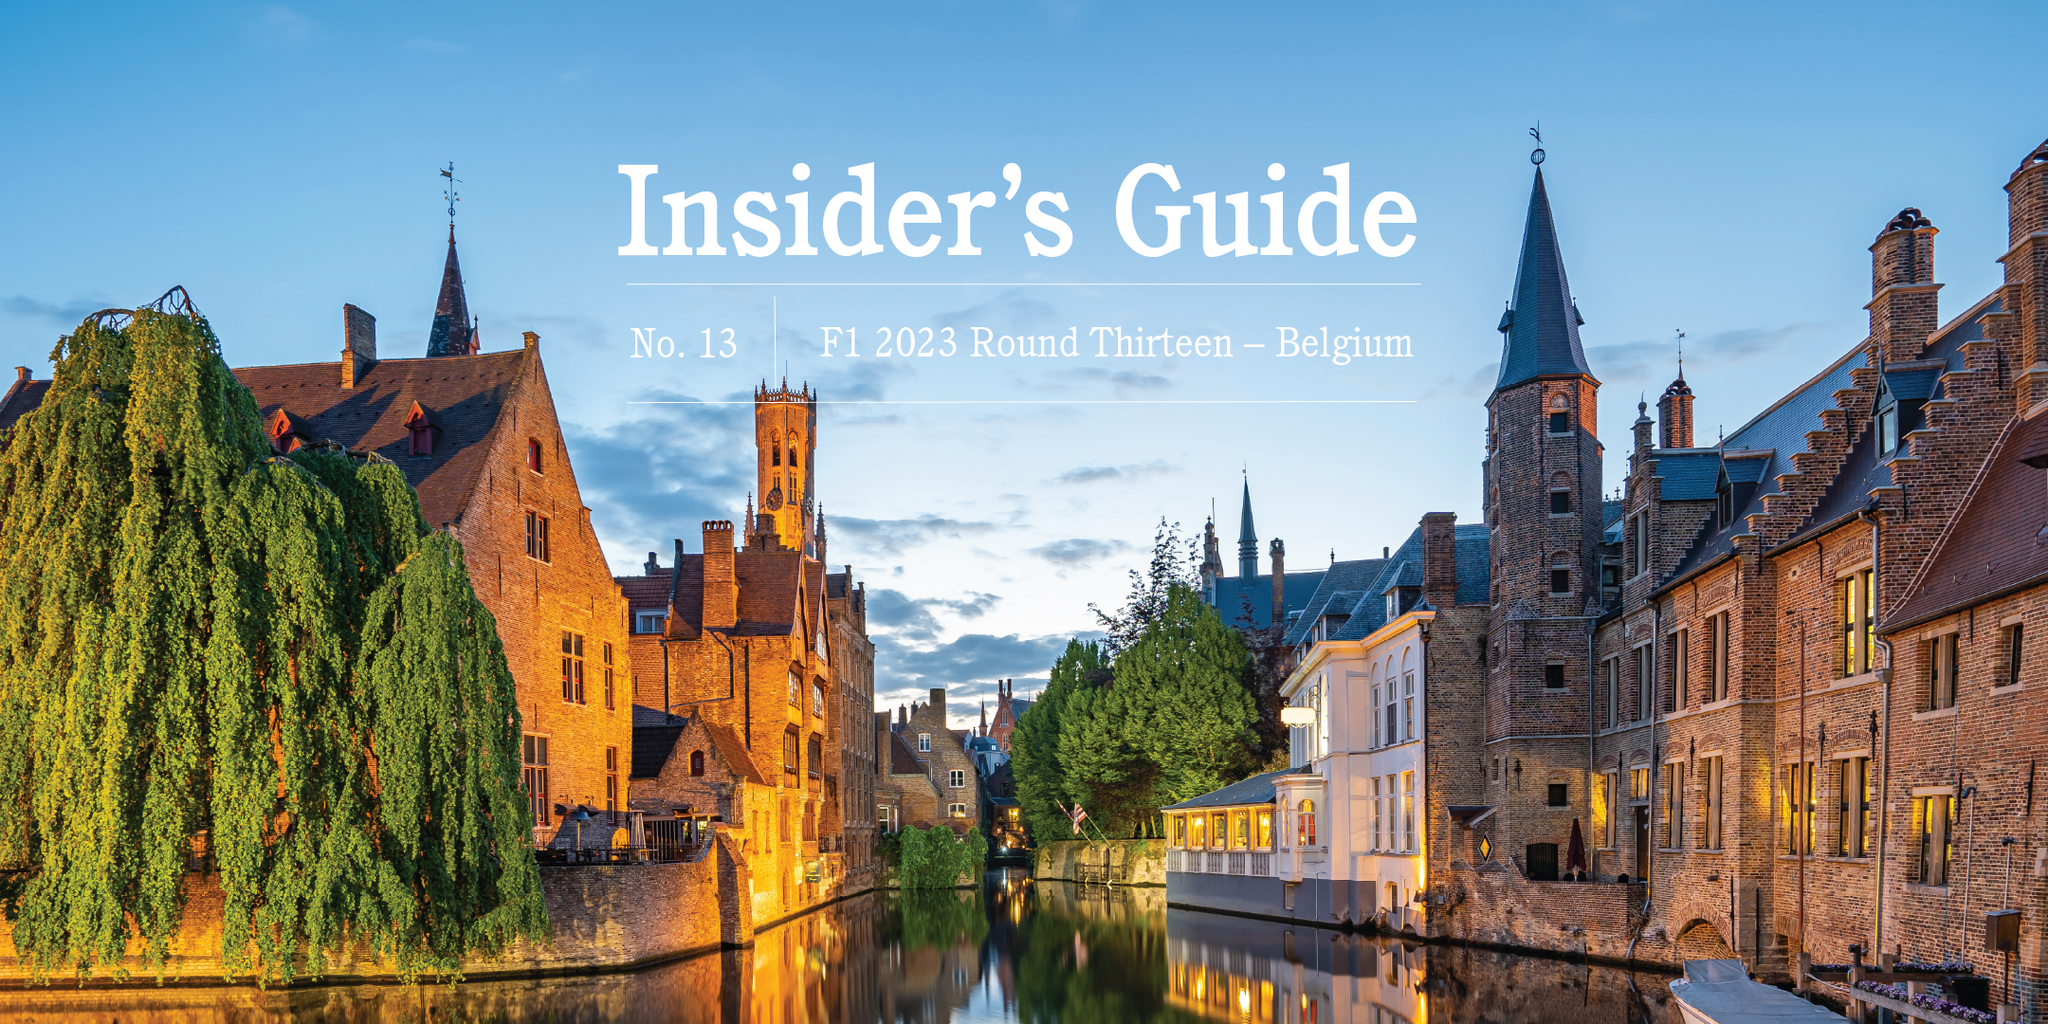 F1 2023 Insider's Guide No. 13 – Belgium